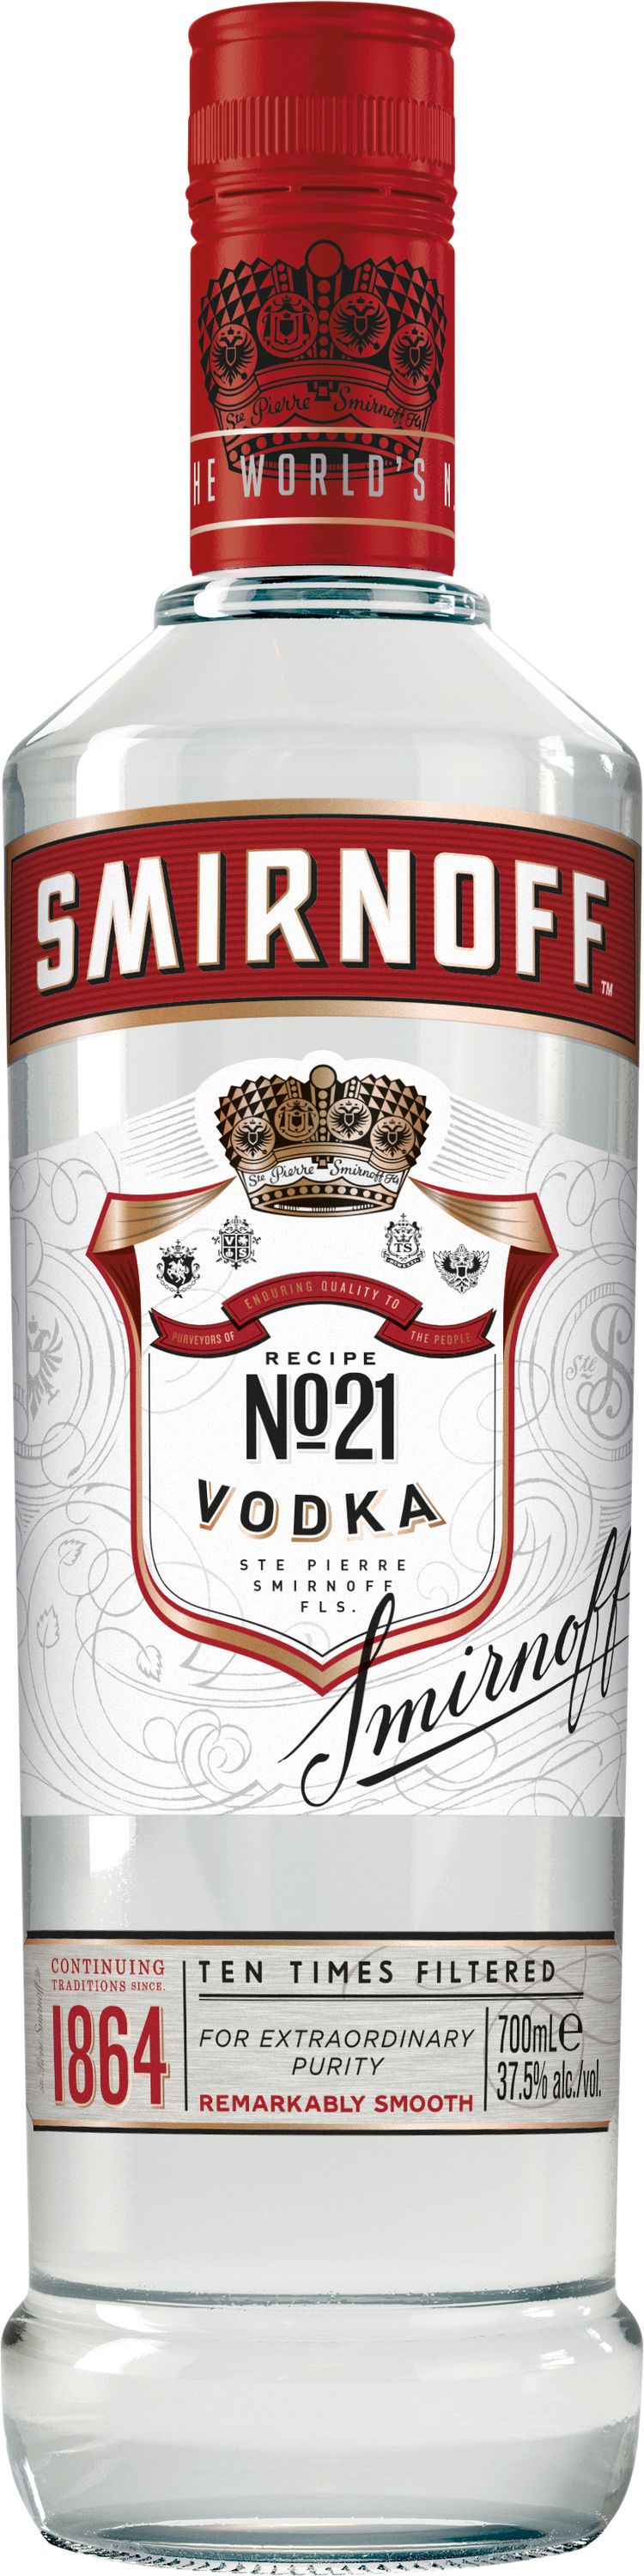 Red 37,5% | Vol. Smirnoff 1000ml Mega-Einkaufsparadies Label Vodka